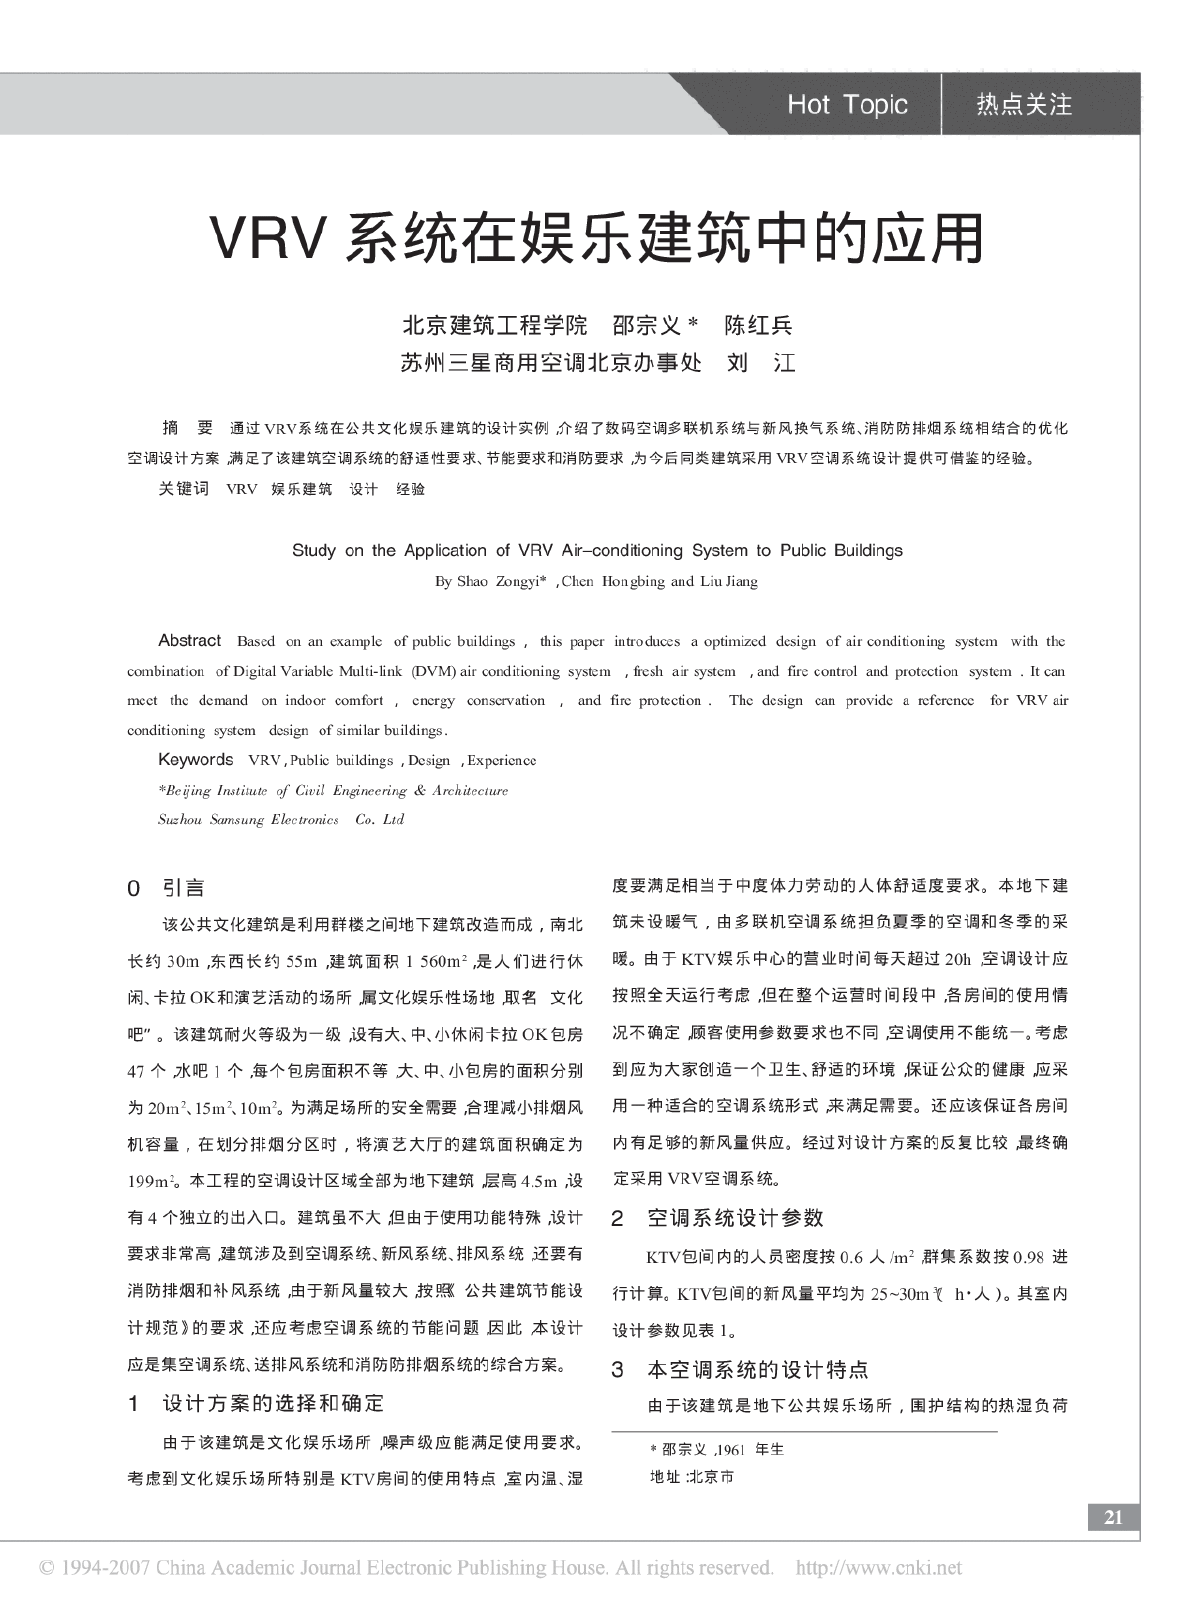 VRV系统在娱乐建筑中的应用